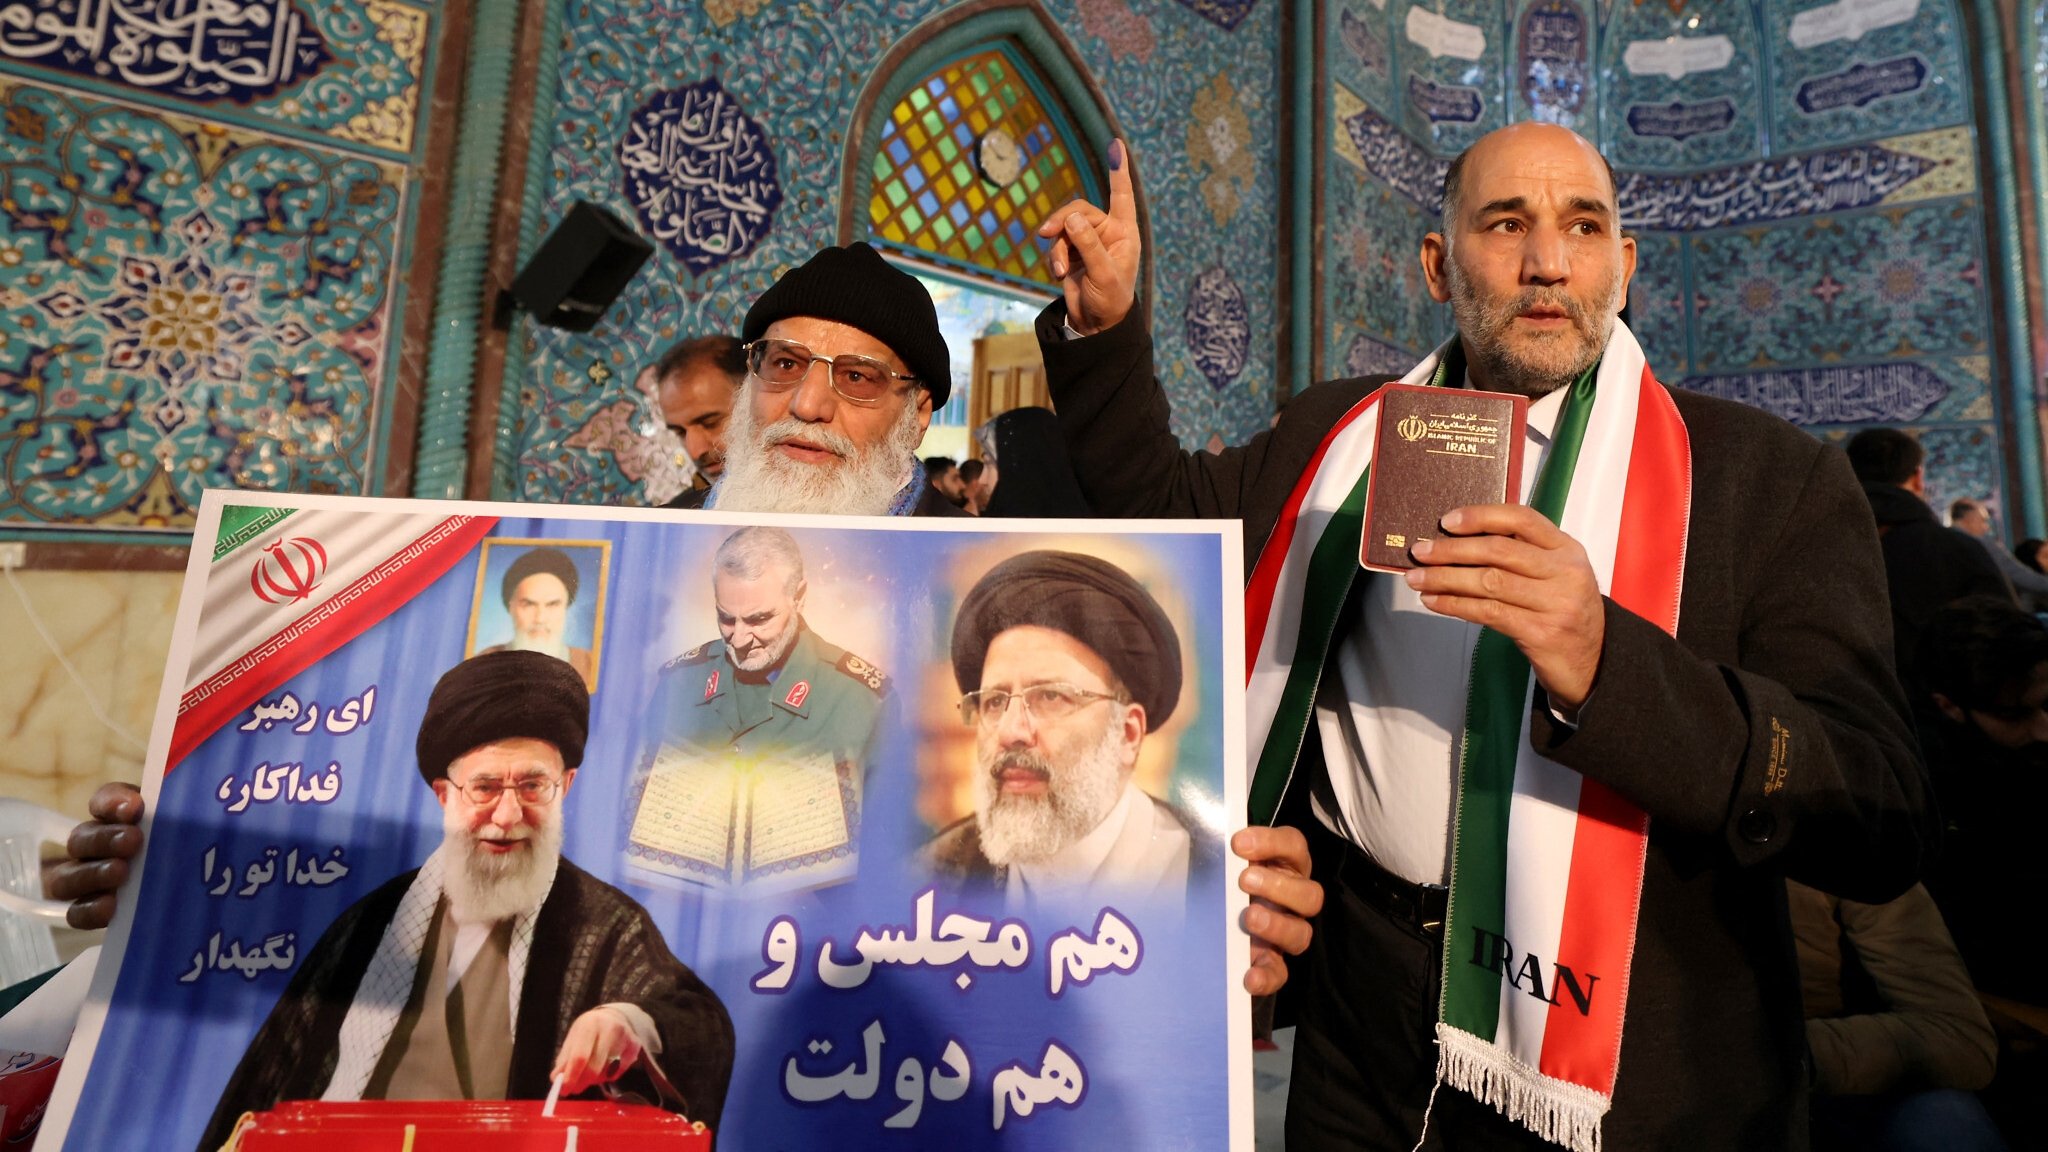 يخضع الريال الإيراني لتأثير النخب الحاكمة وأخبار الأوضاع السياسية